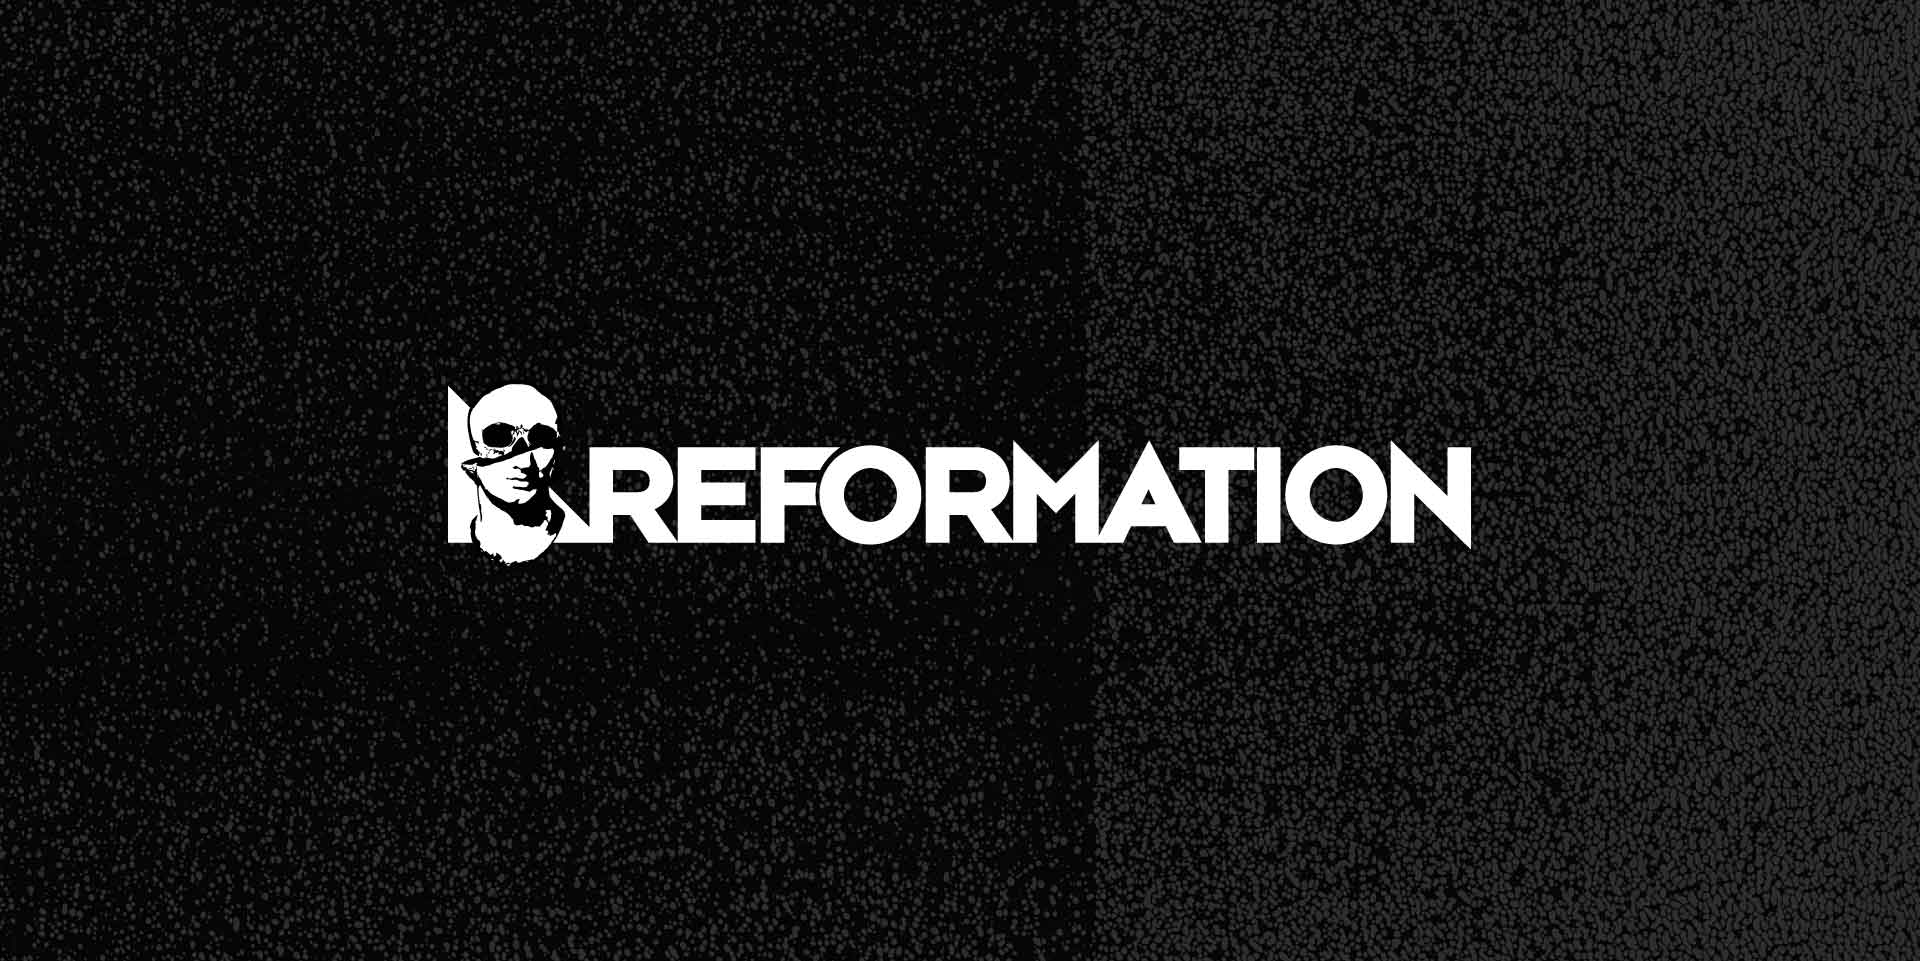 Reformation Club